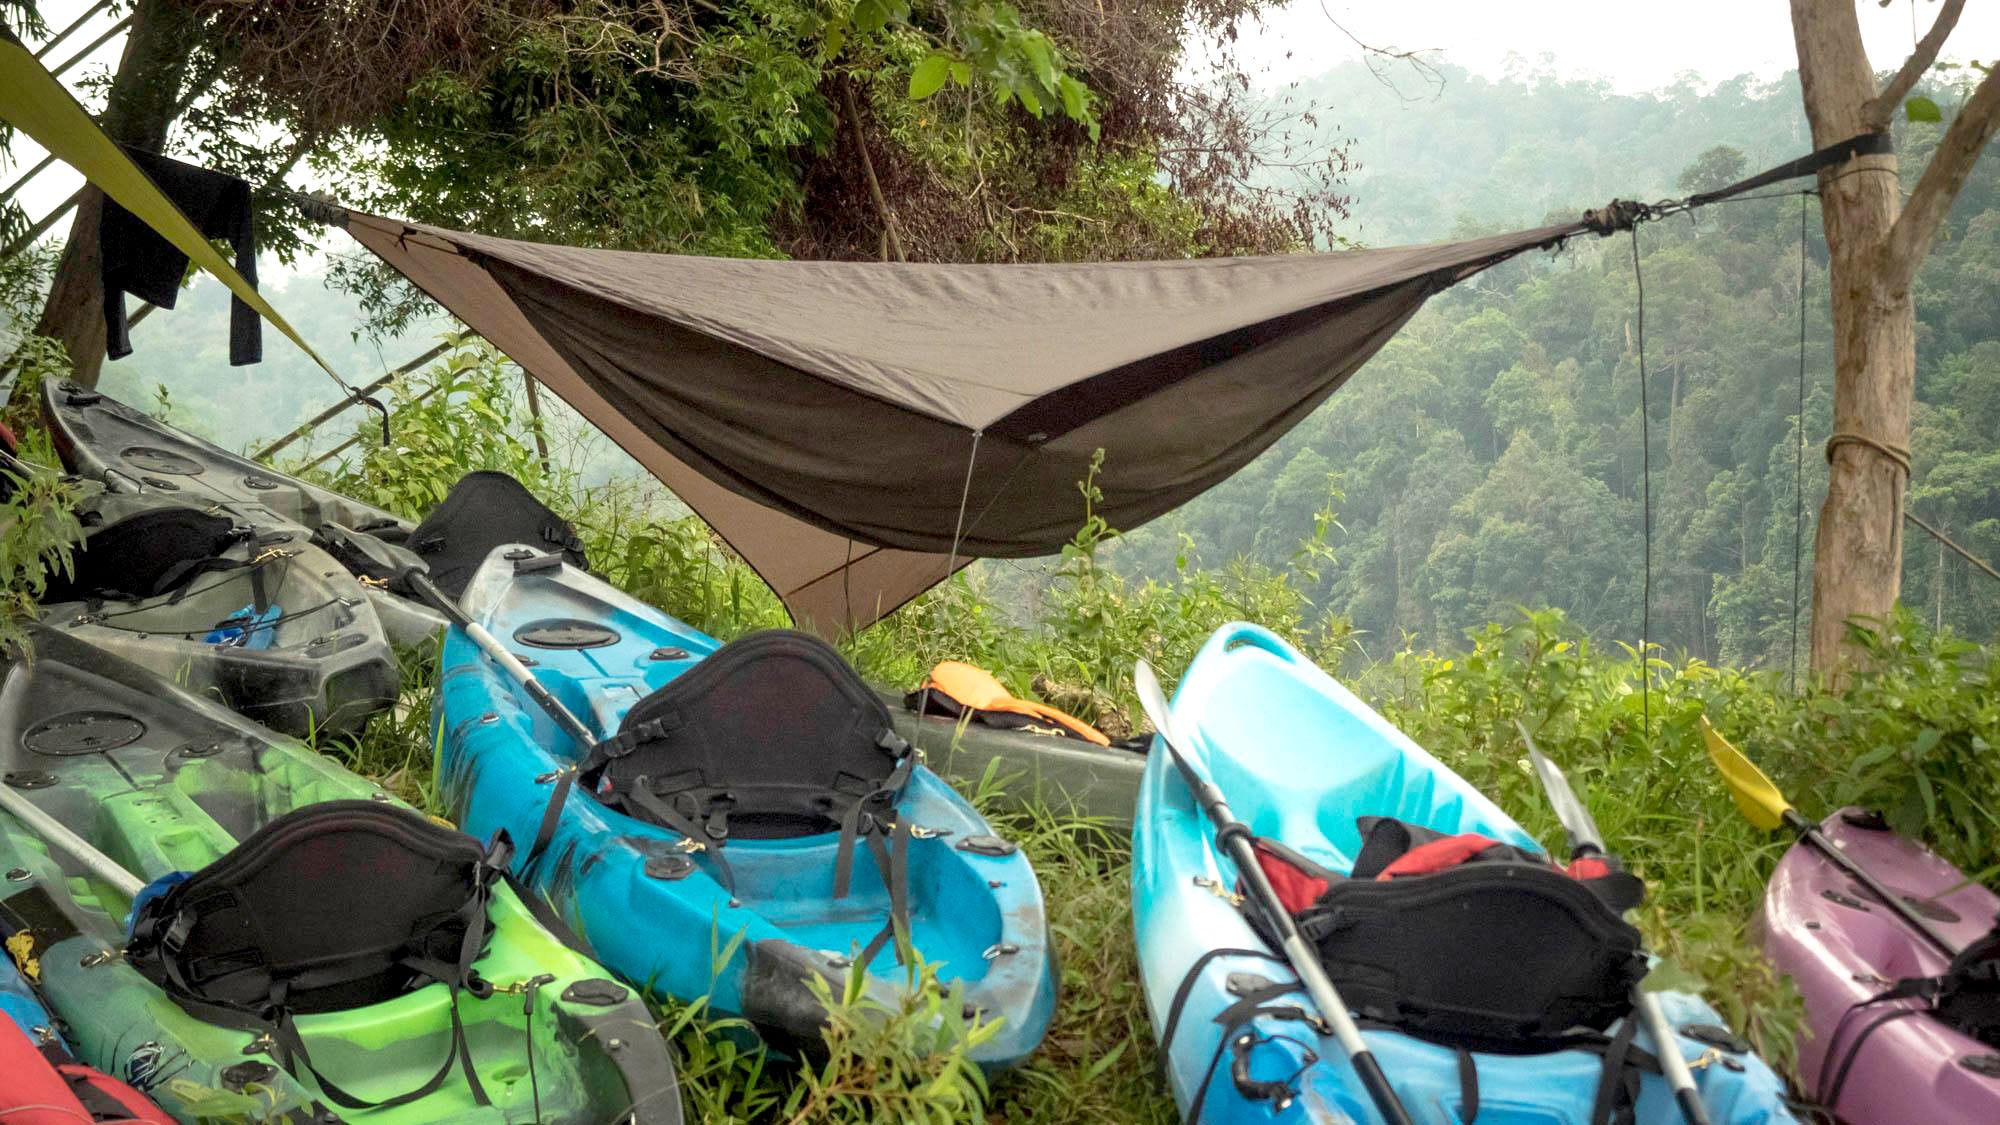 kayaks in malaysia by ramon faddi